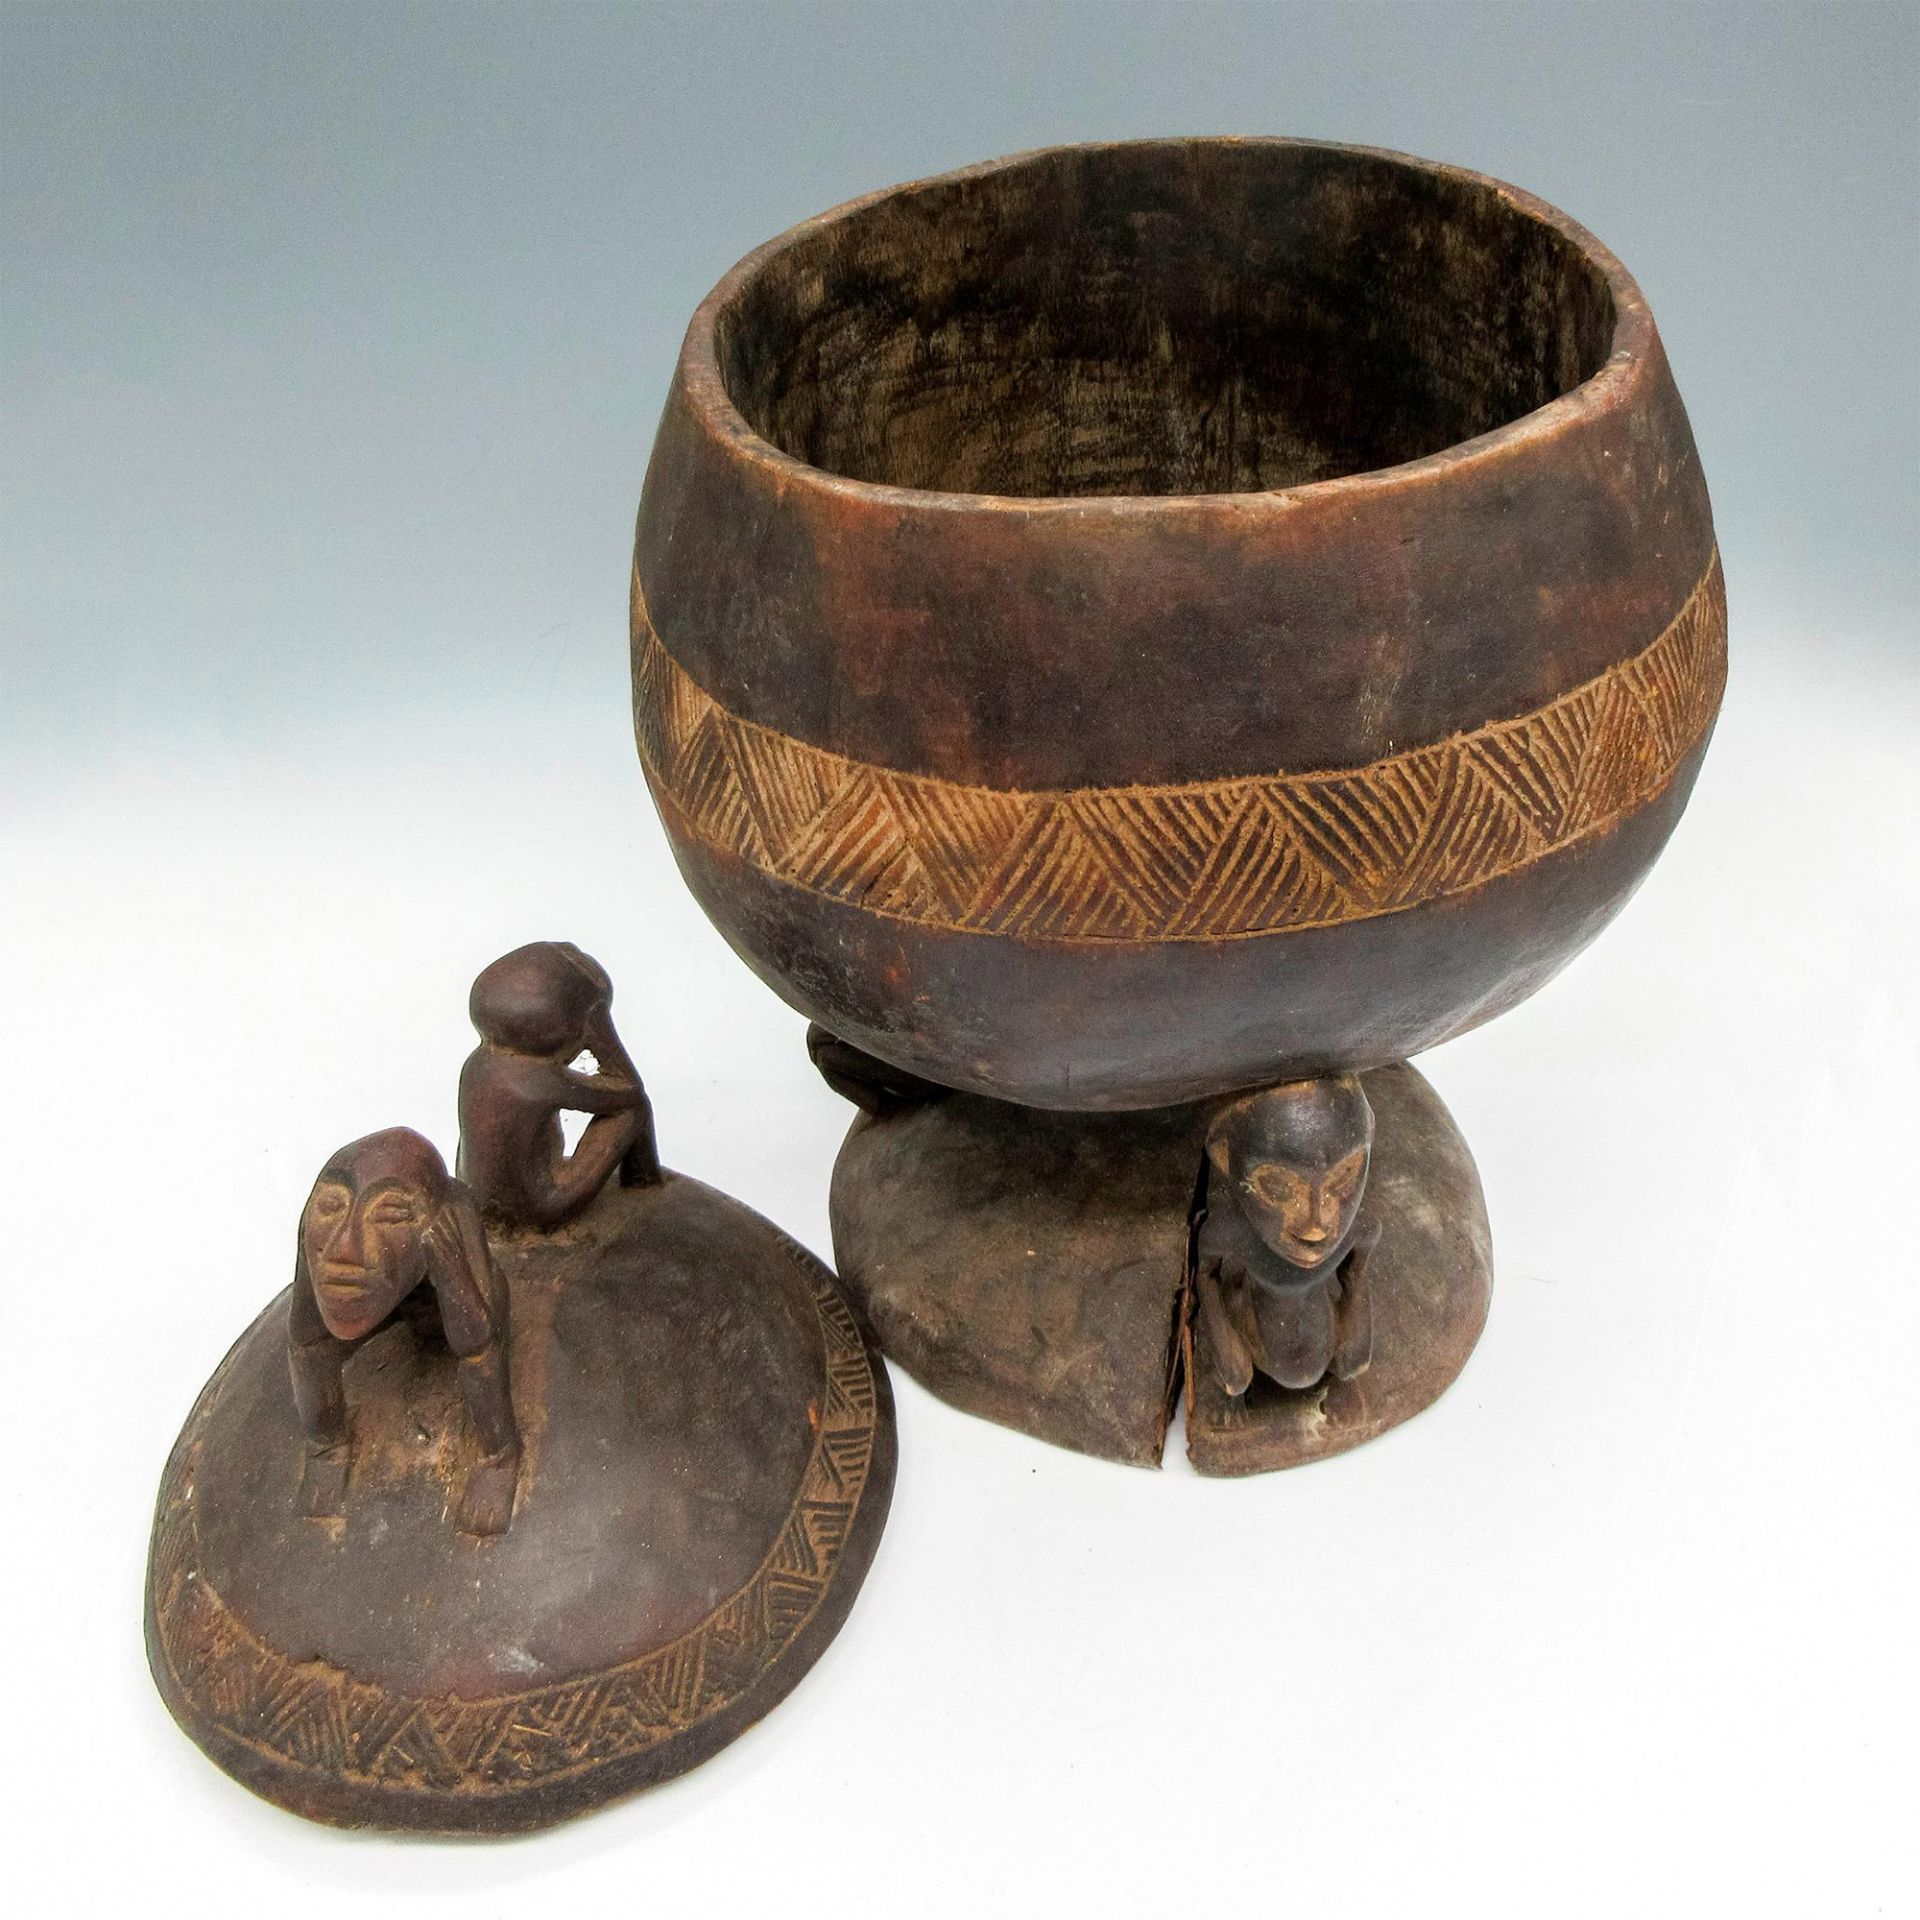 Vintage African Carved Wooden Lidded Medicine Bowl - Image 4 of 4